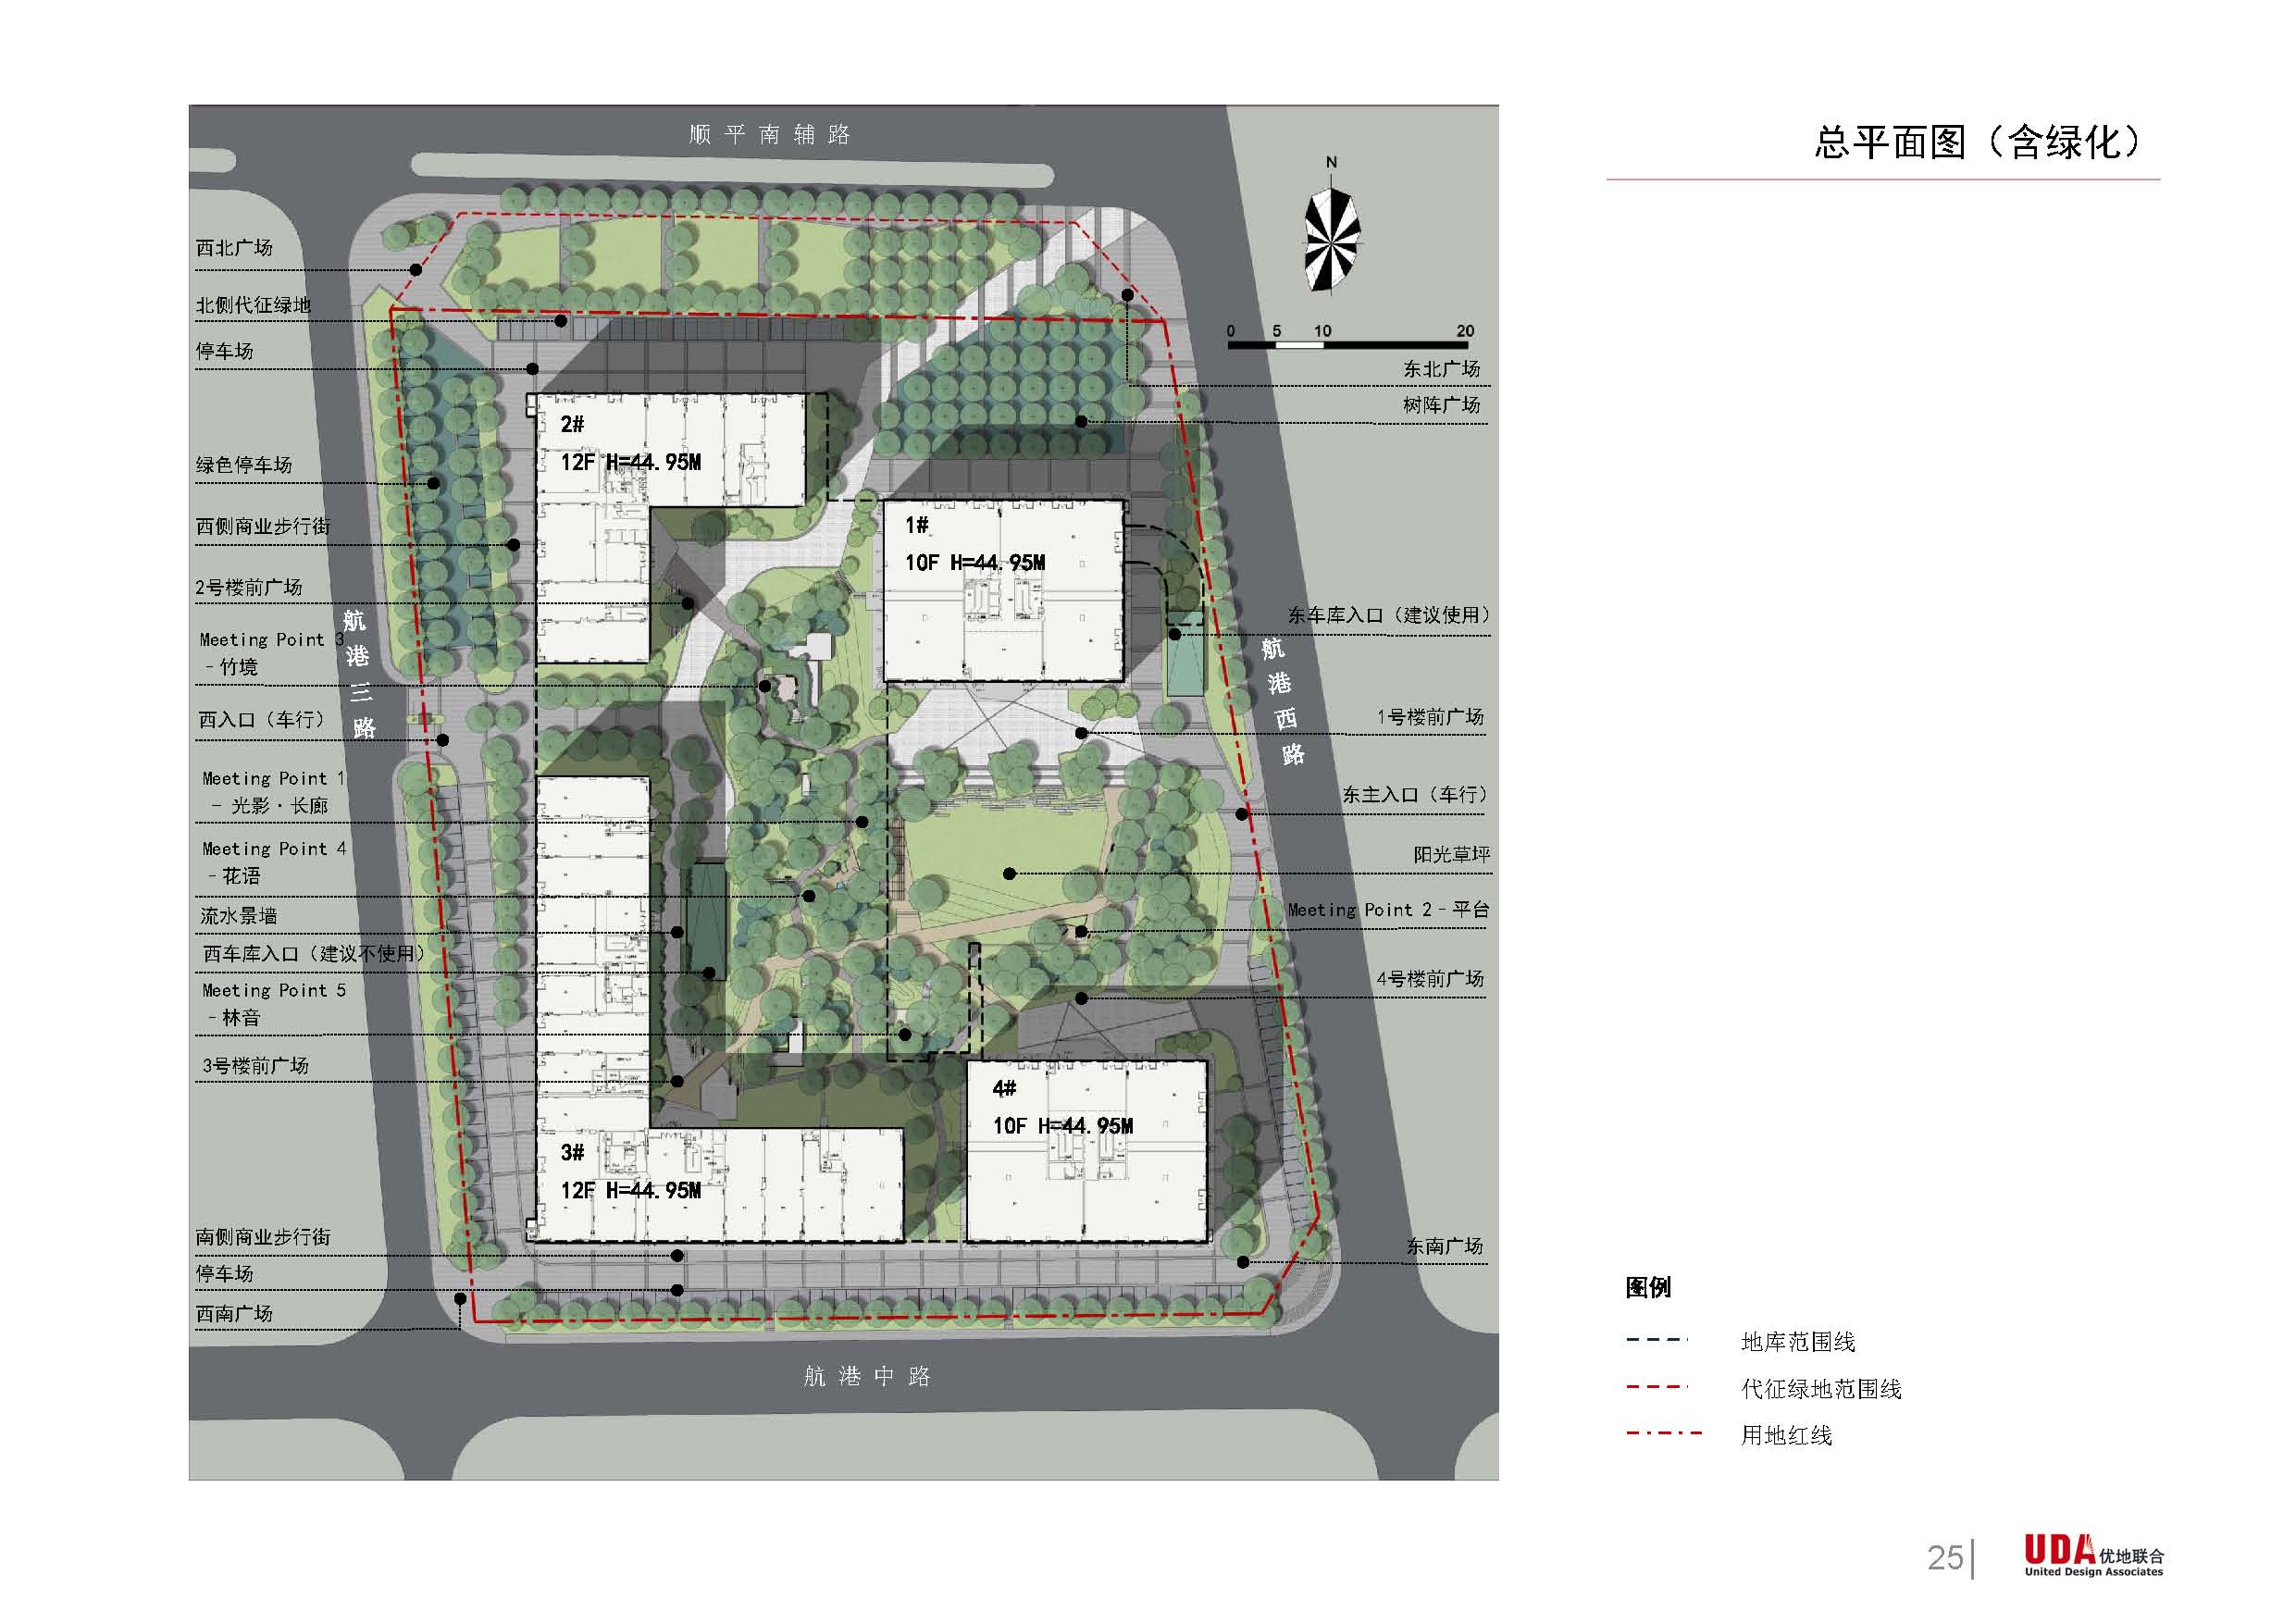 【北京】绿色简洁大气商业街景观规划设计方案